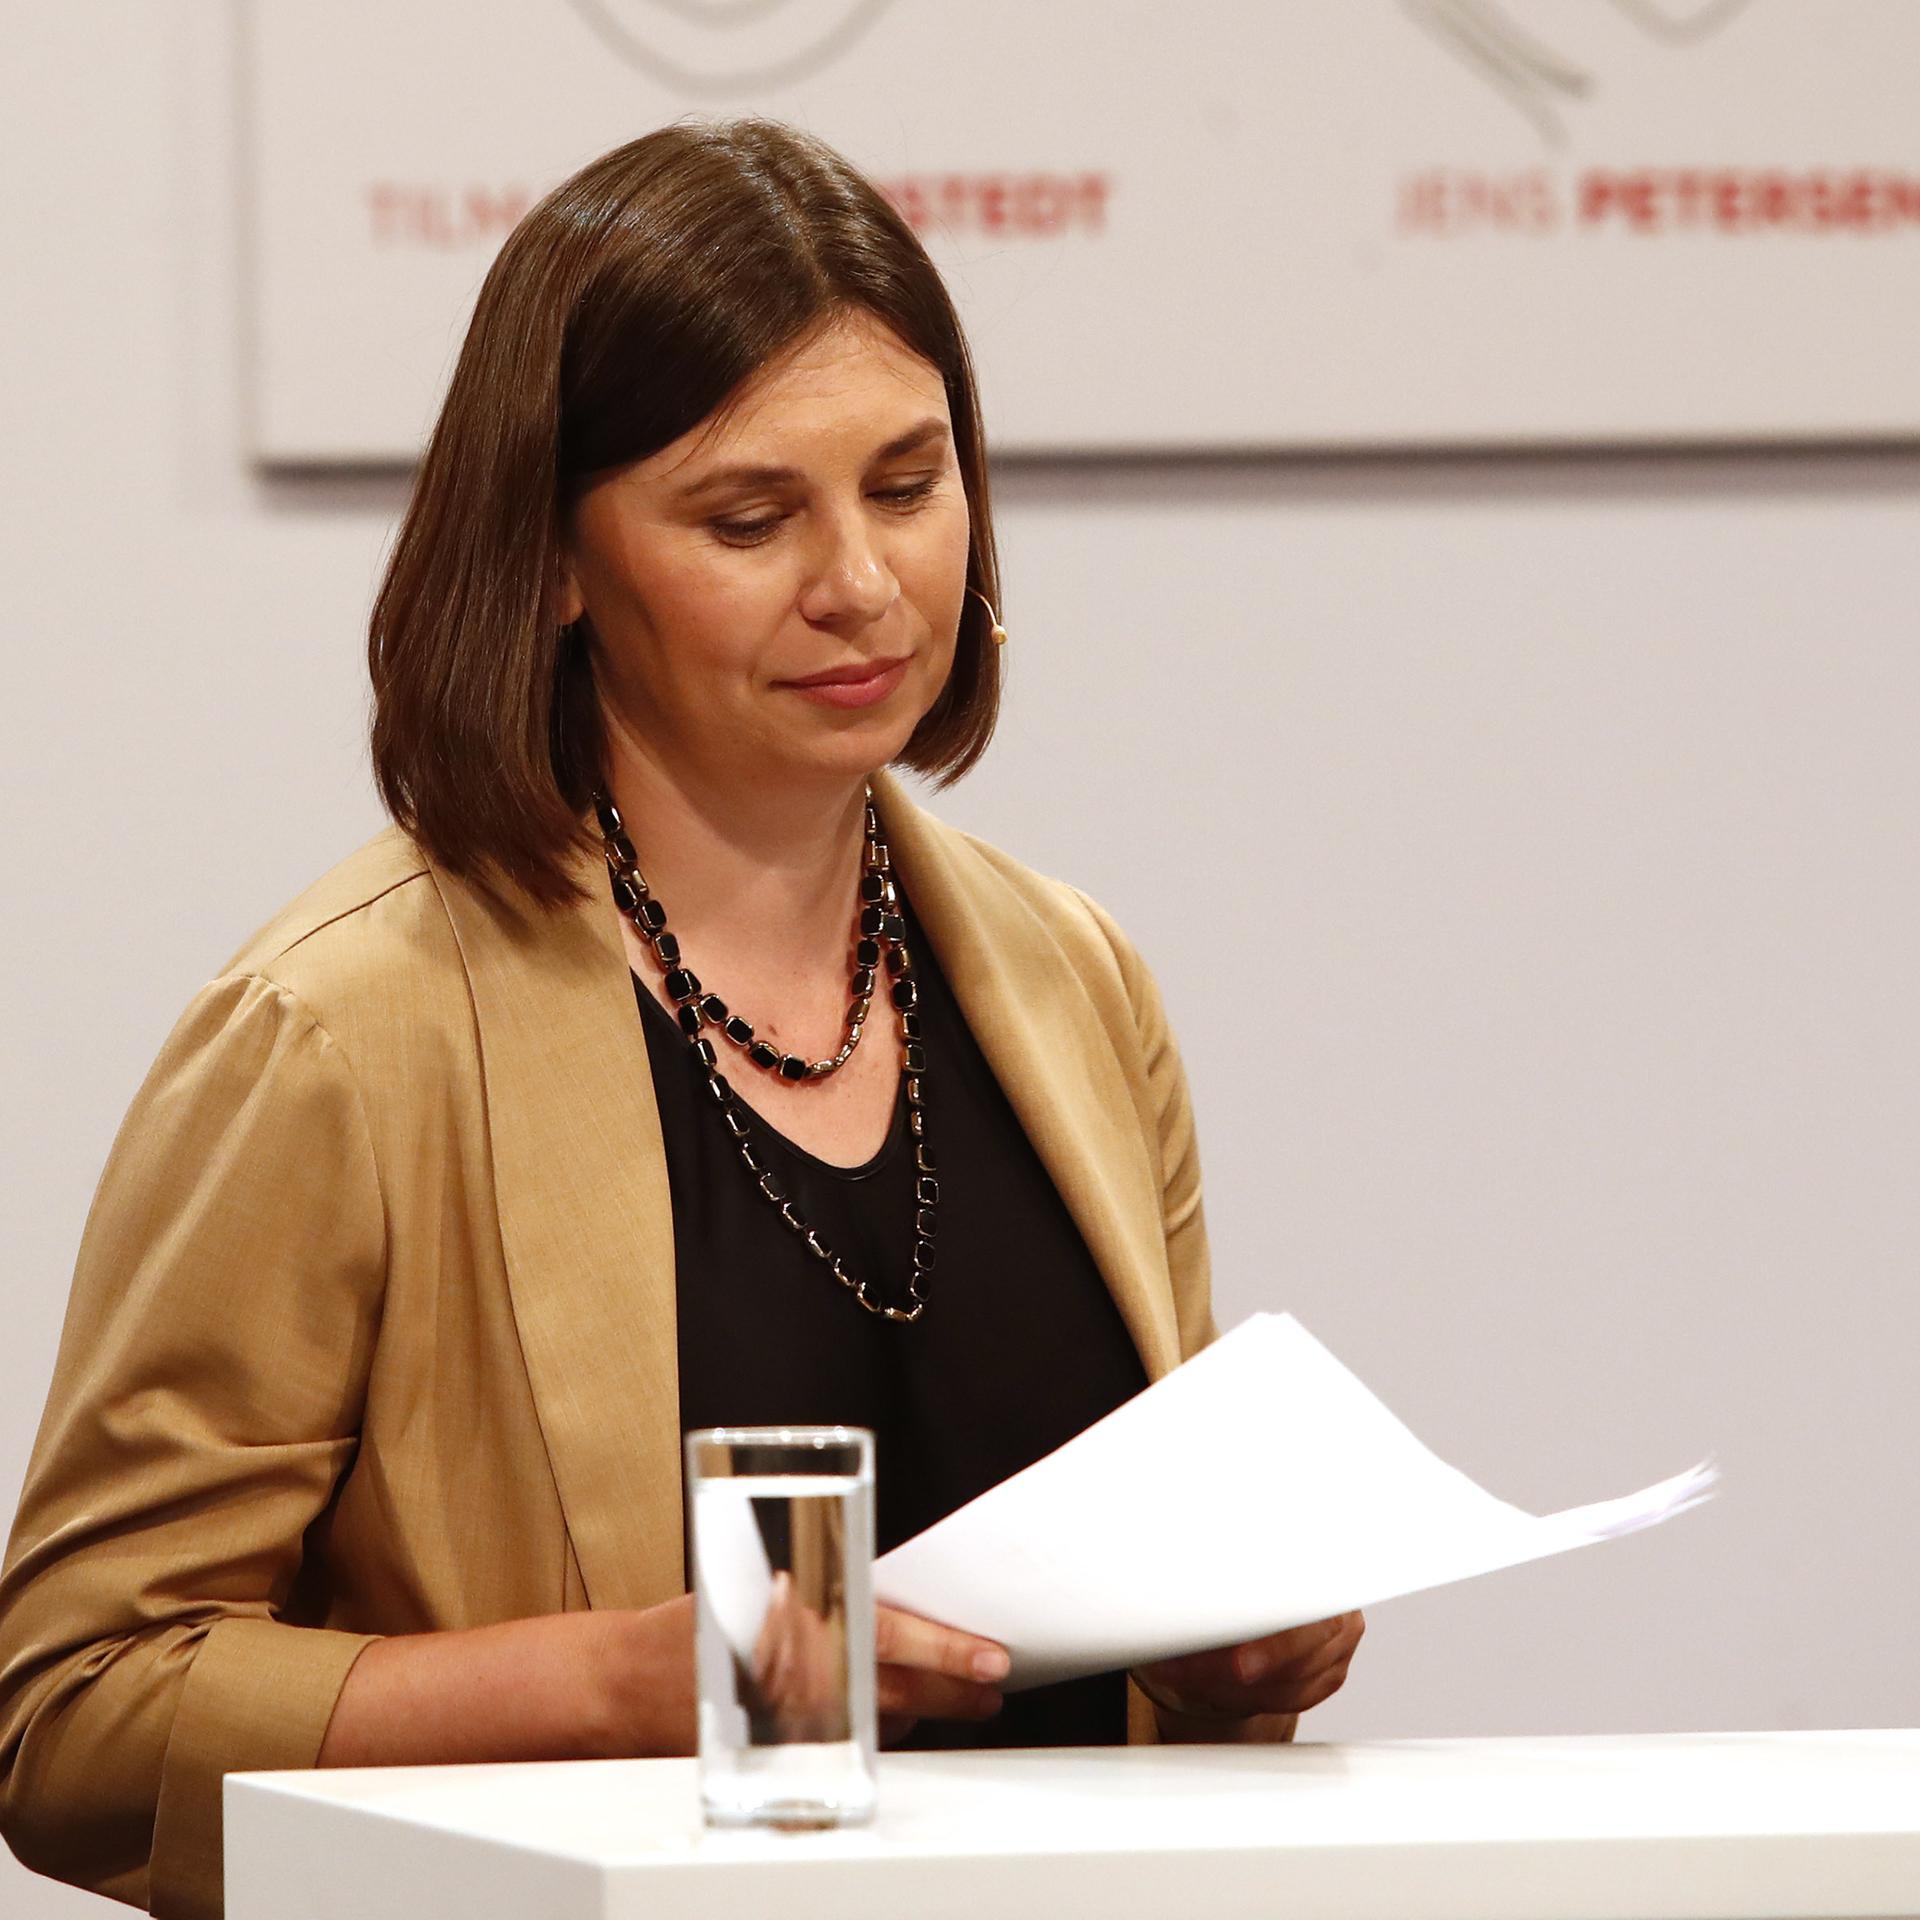 Die in der Ukraine geborene Autorin Tanja Maljartschuk am 28.6.2023 hält eine Rede im Rahmen der Eröffnung der "47. Tage der deutschsprachigen Literatur" in Klagenfurt.